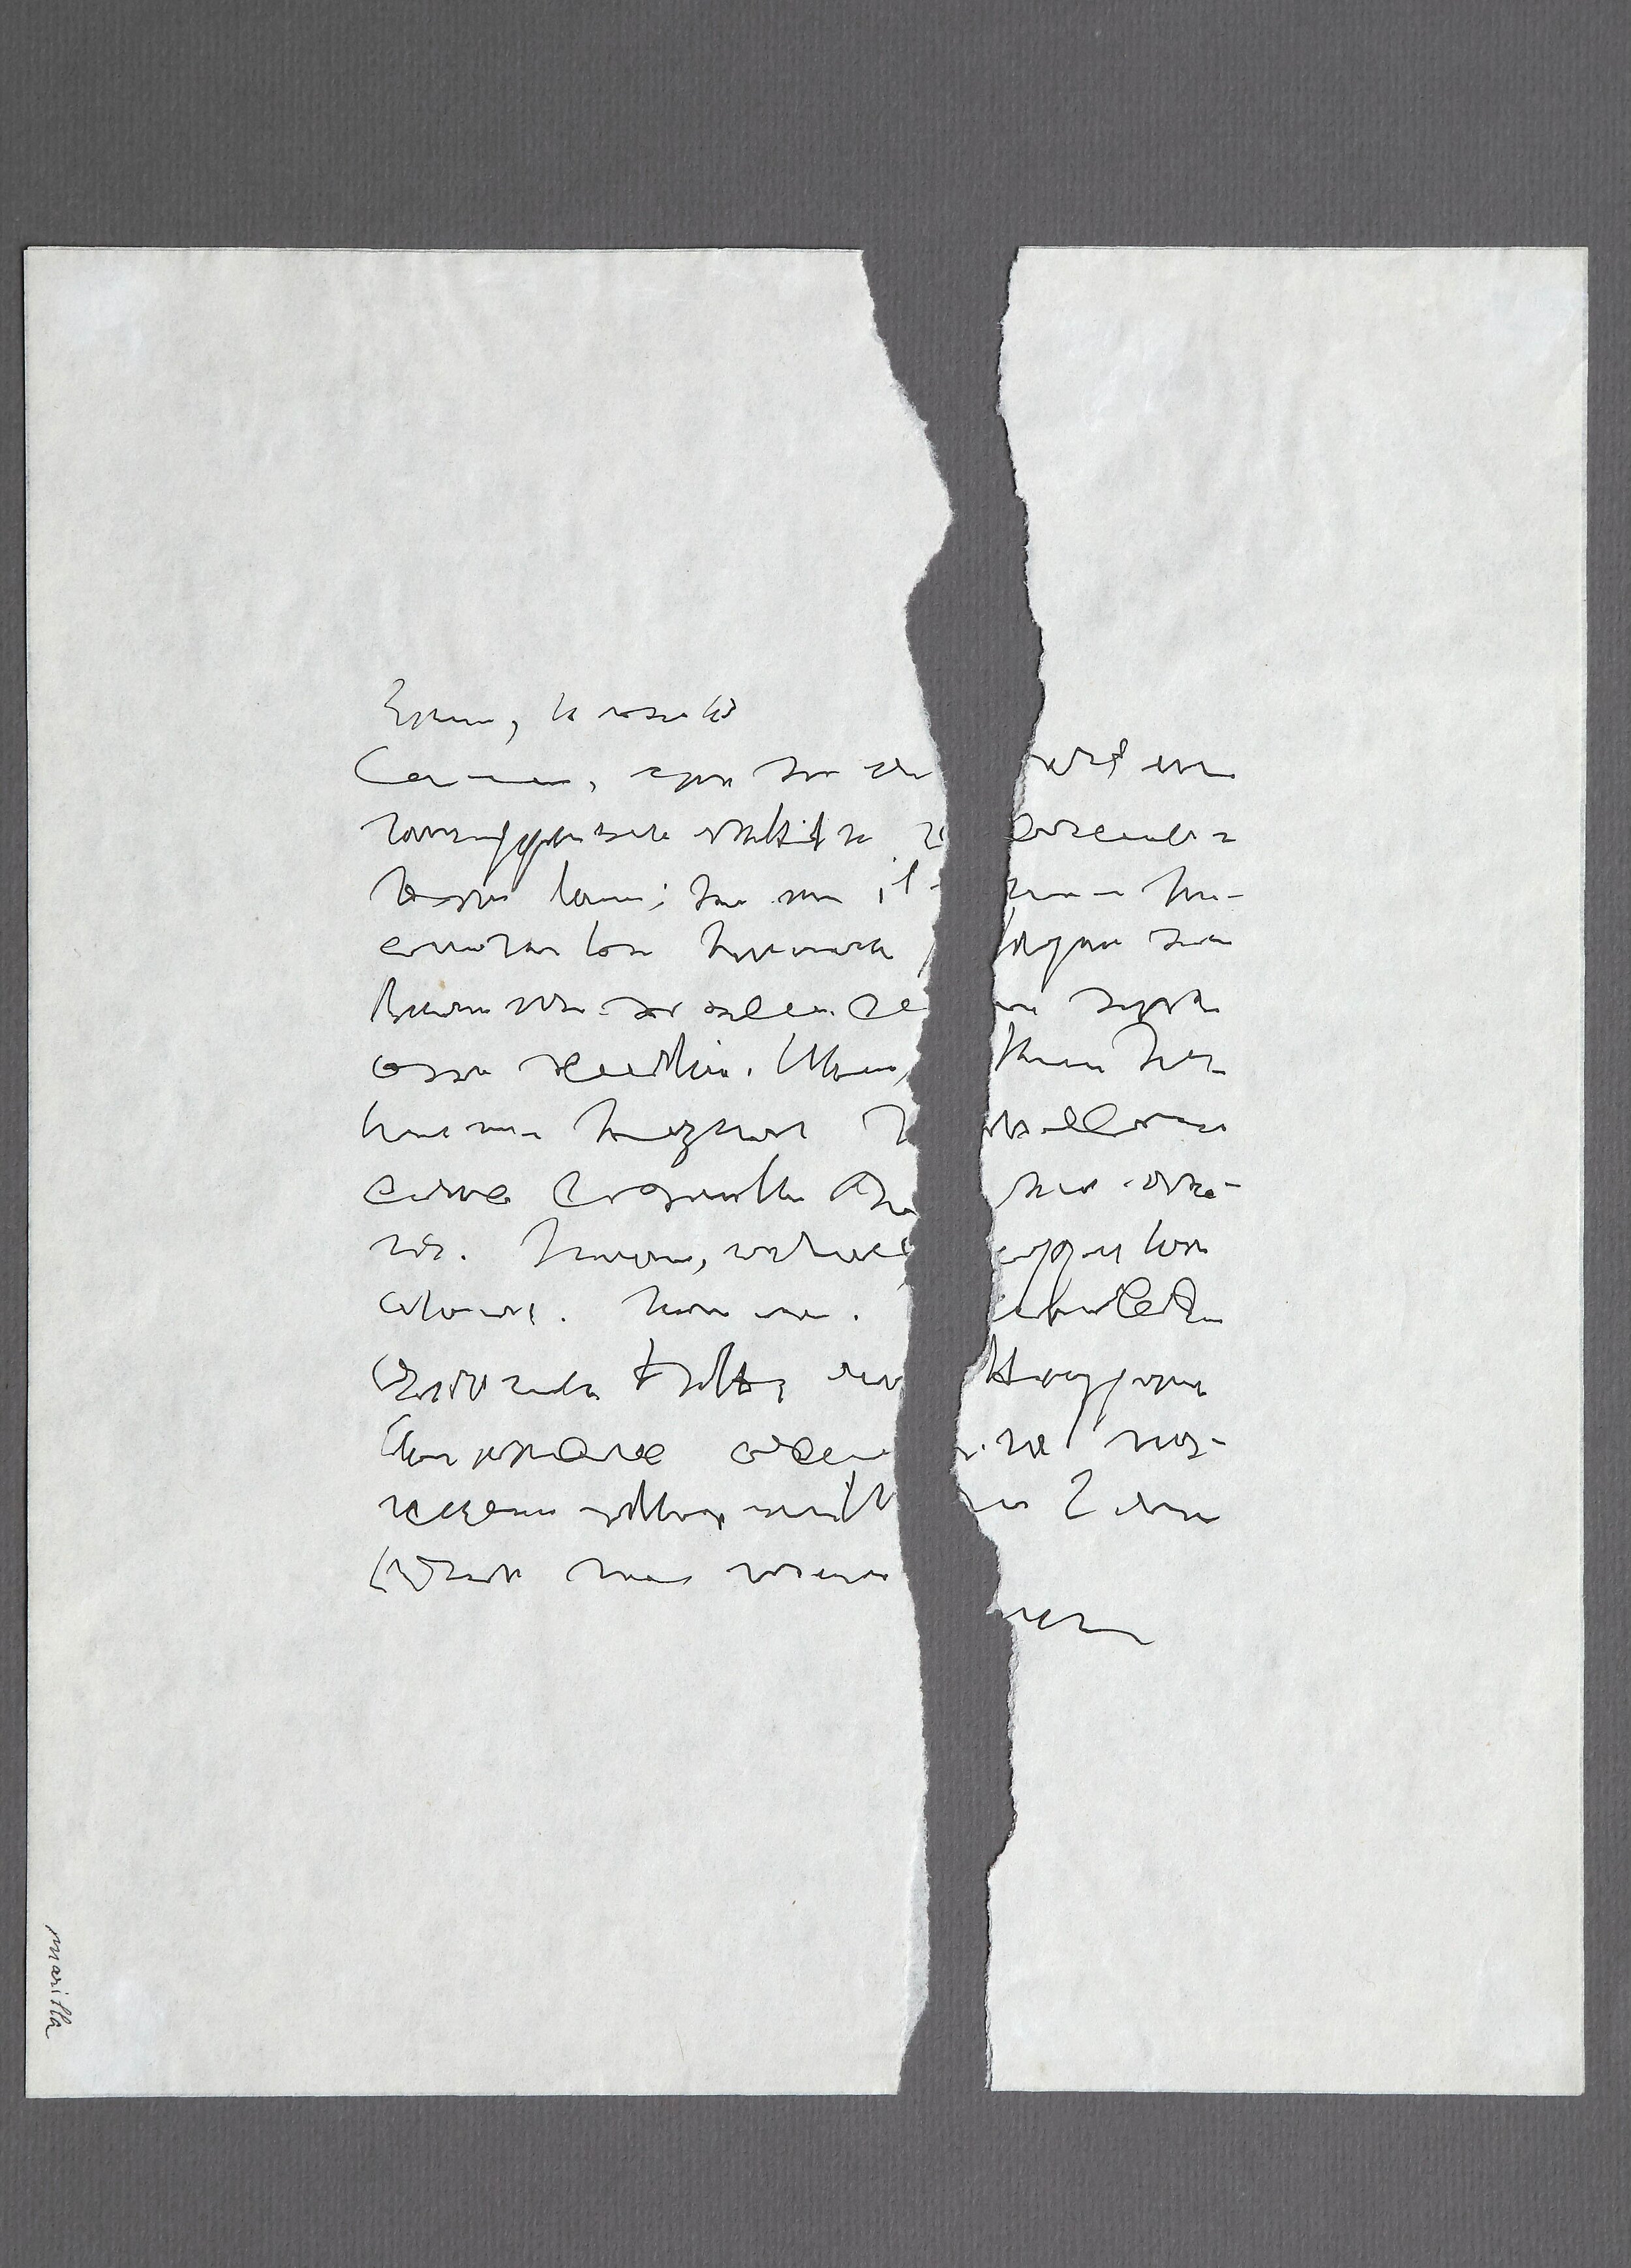 "Lettera con rottura", 1968